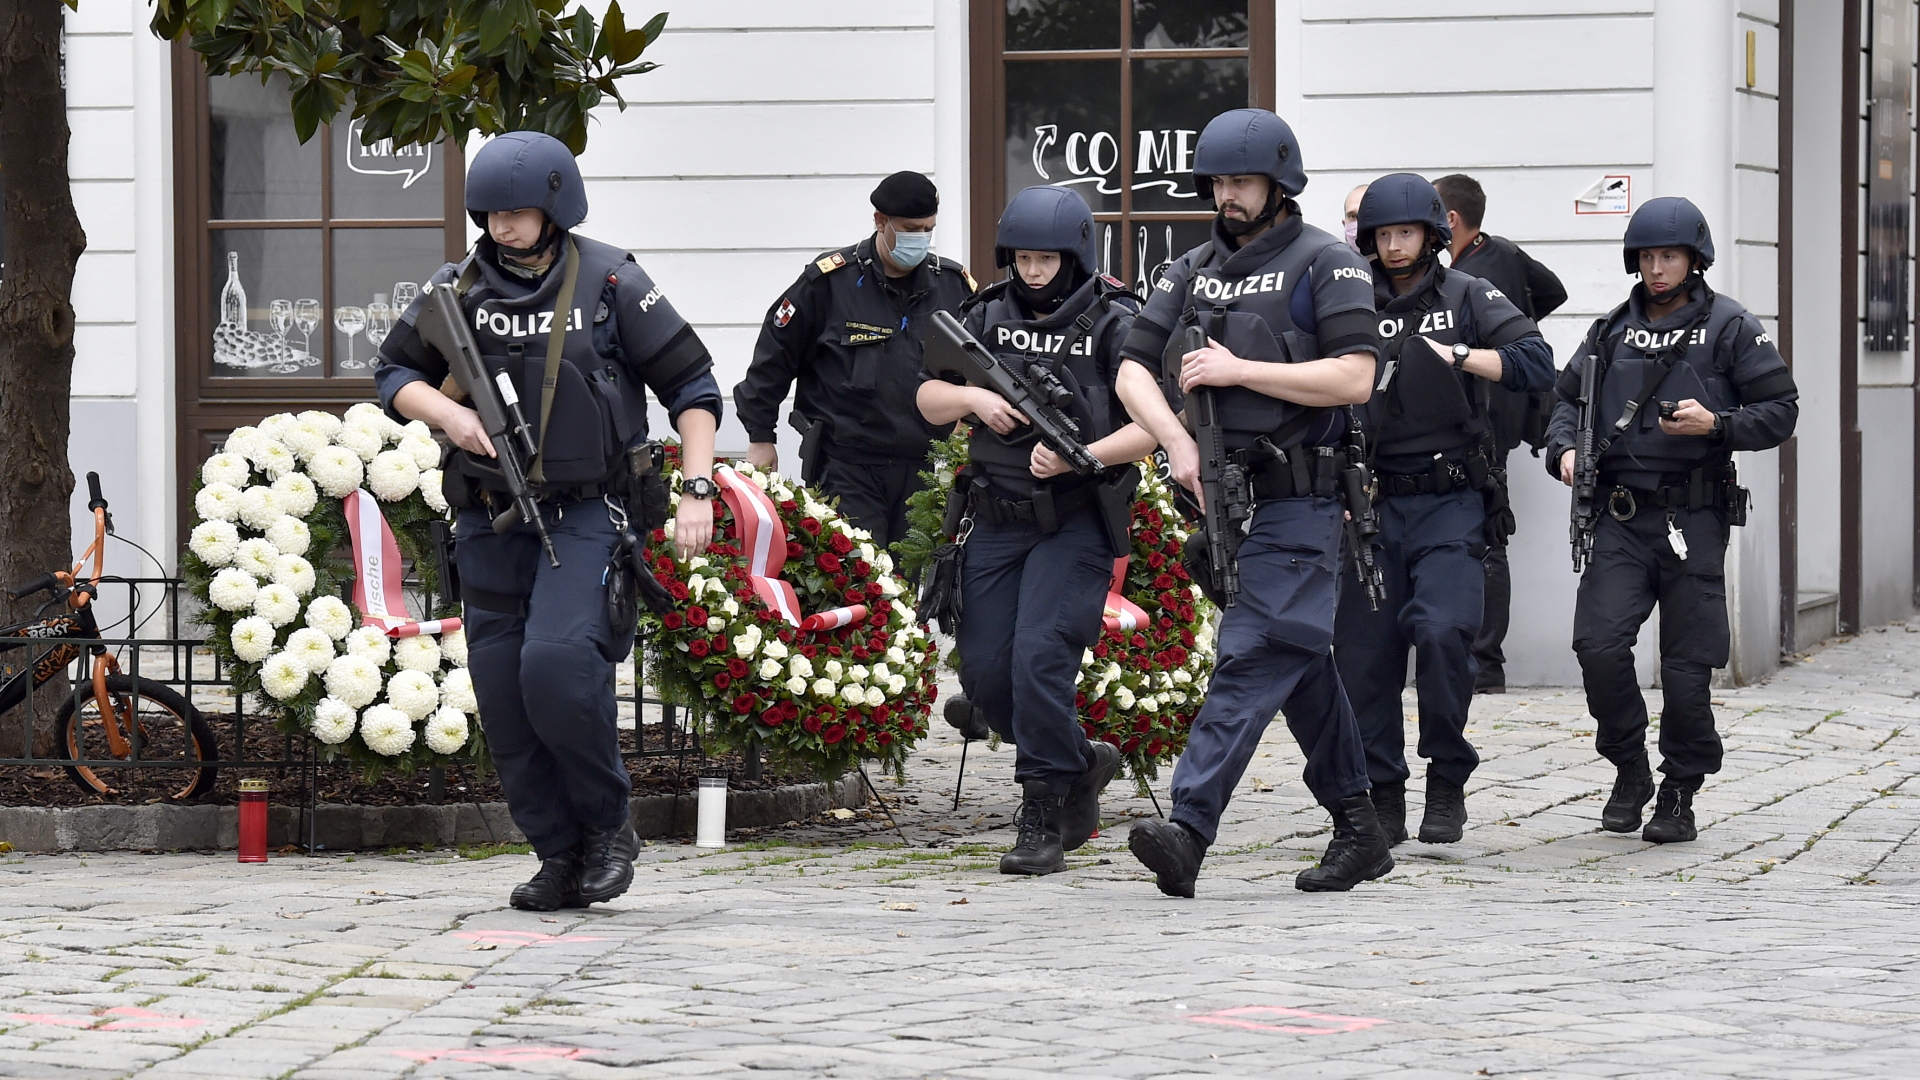 Polizisten gehen nach dem Terroranschlag an Blumenkränzen nahe des Tatorts in Wien vorbei. | dpa